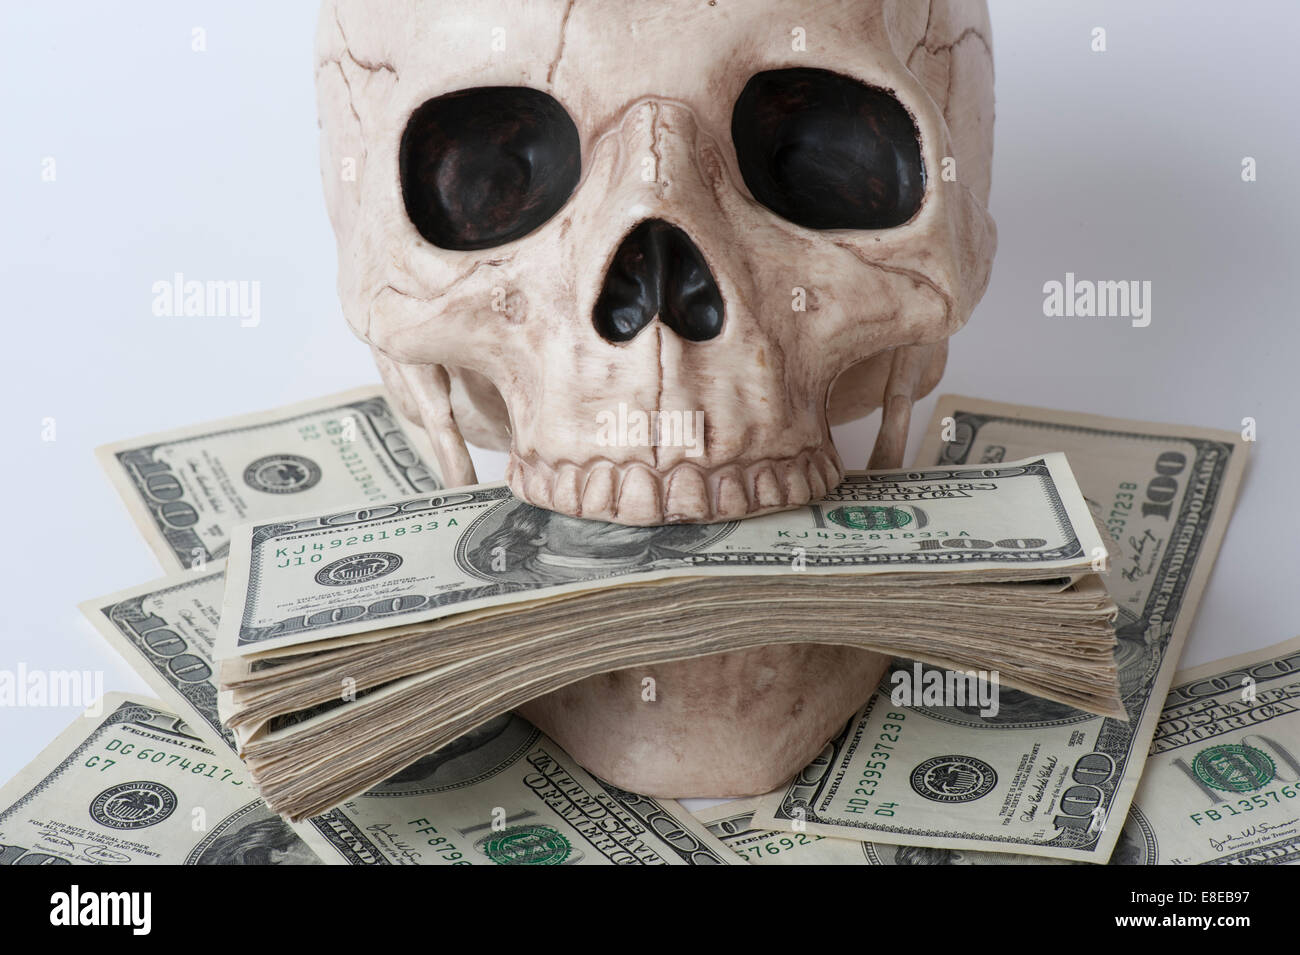 Crâne humain entouré de piles de cent dollars l'avidité concept Banque D'Images